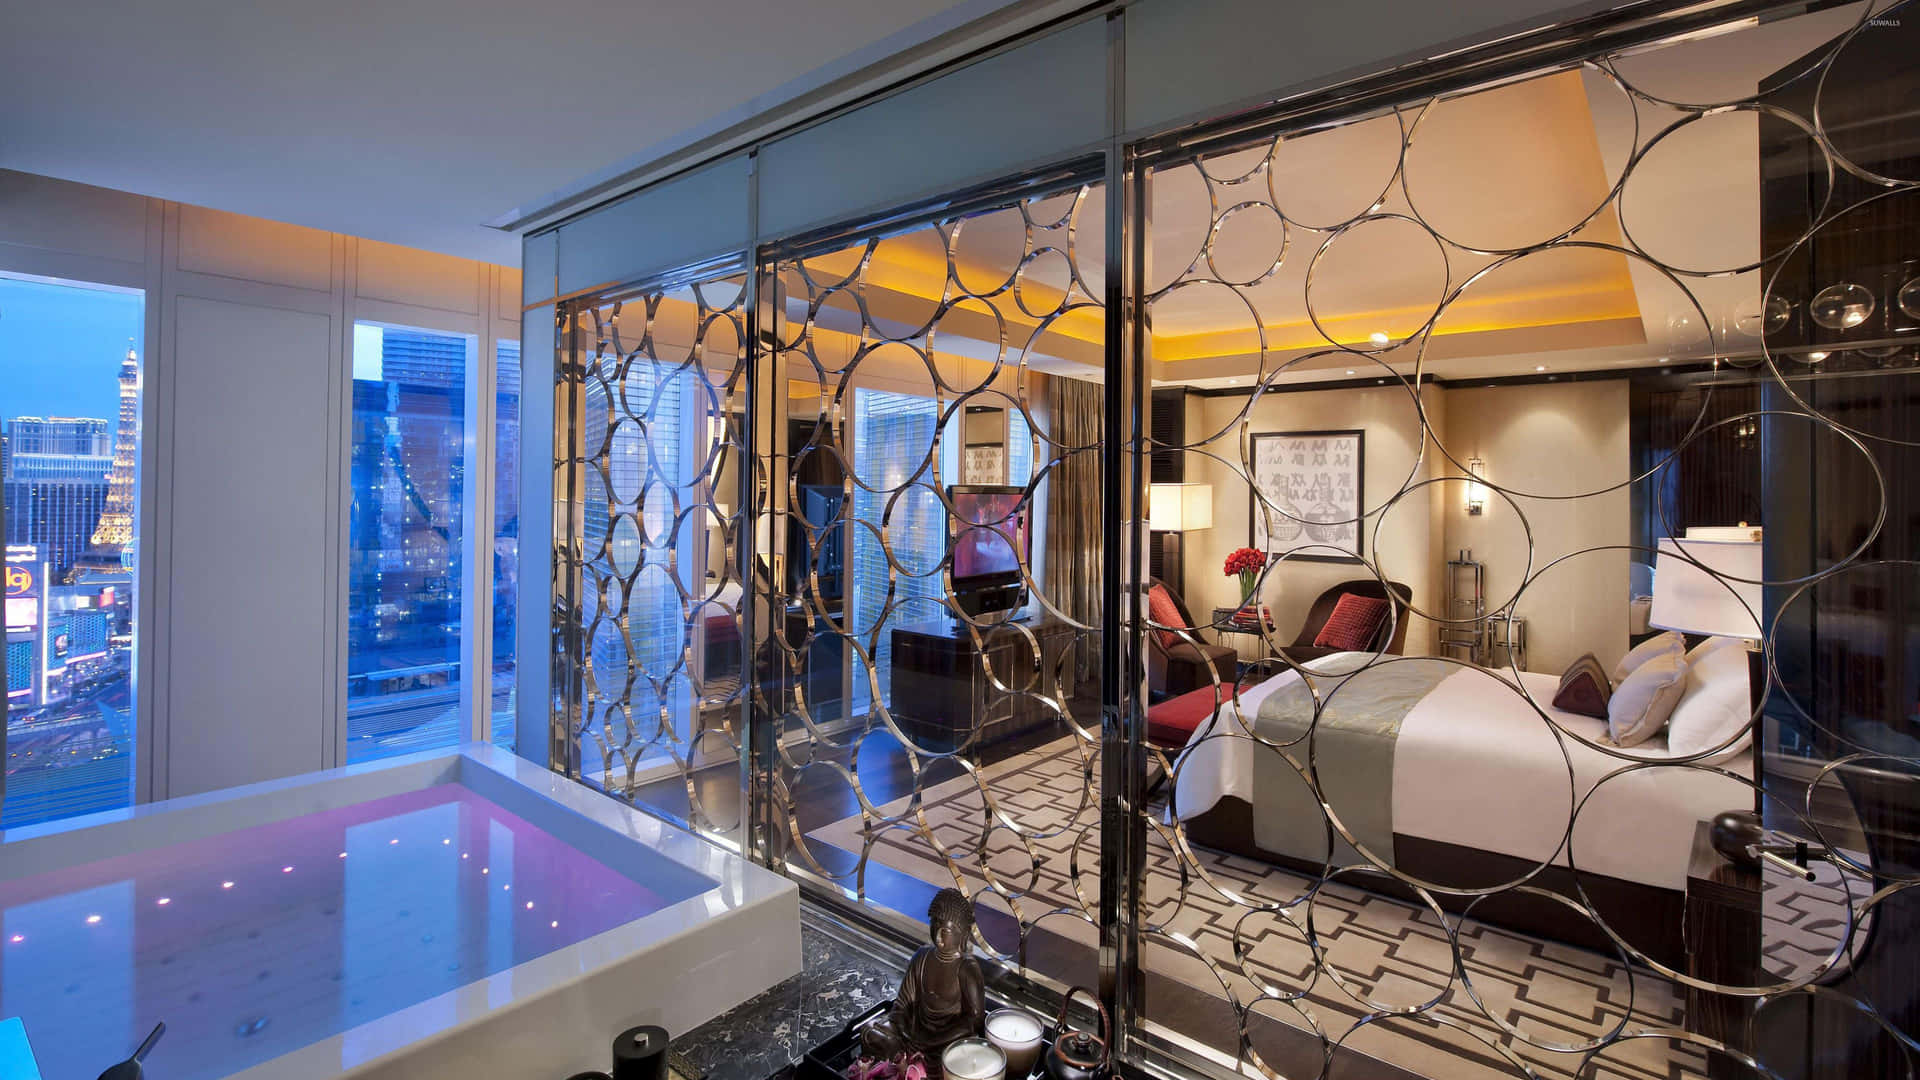 Elegant Luxury Hotel Room